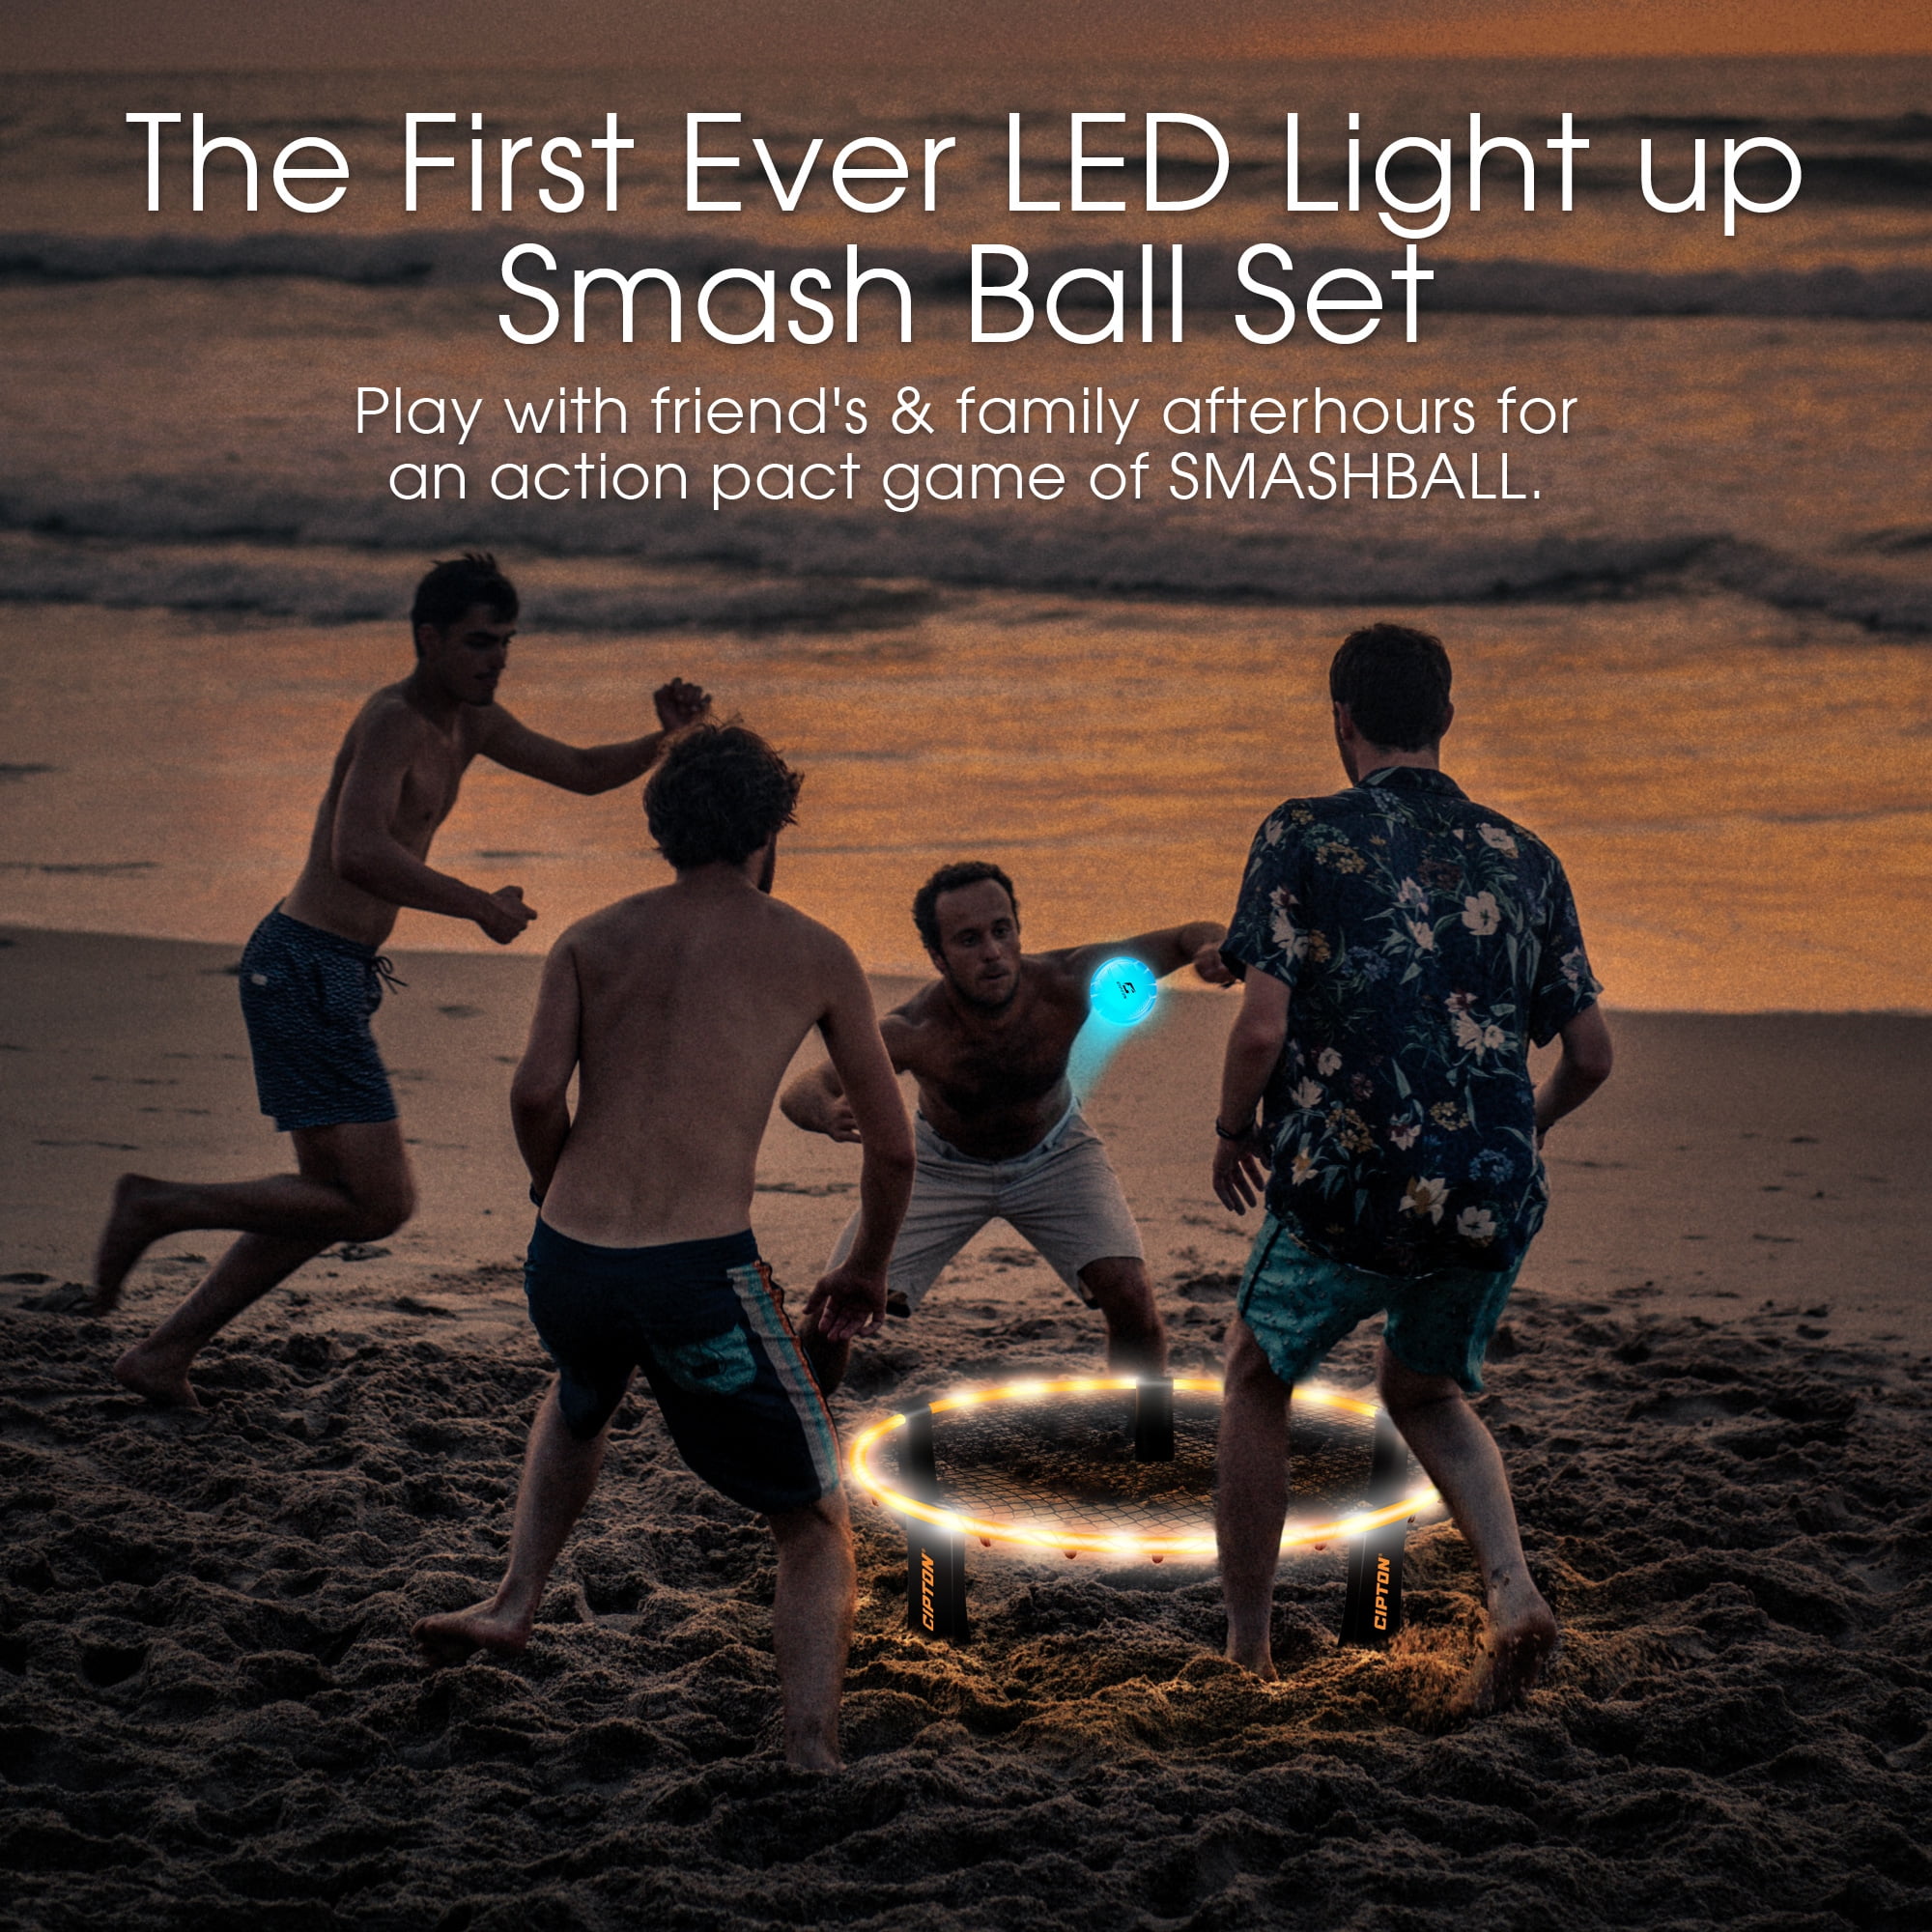 Cipton LED Light Up Smash Ball Set Portable Outdoor Beach Games